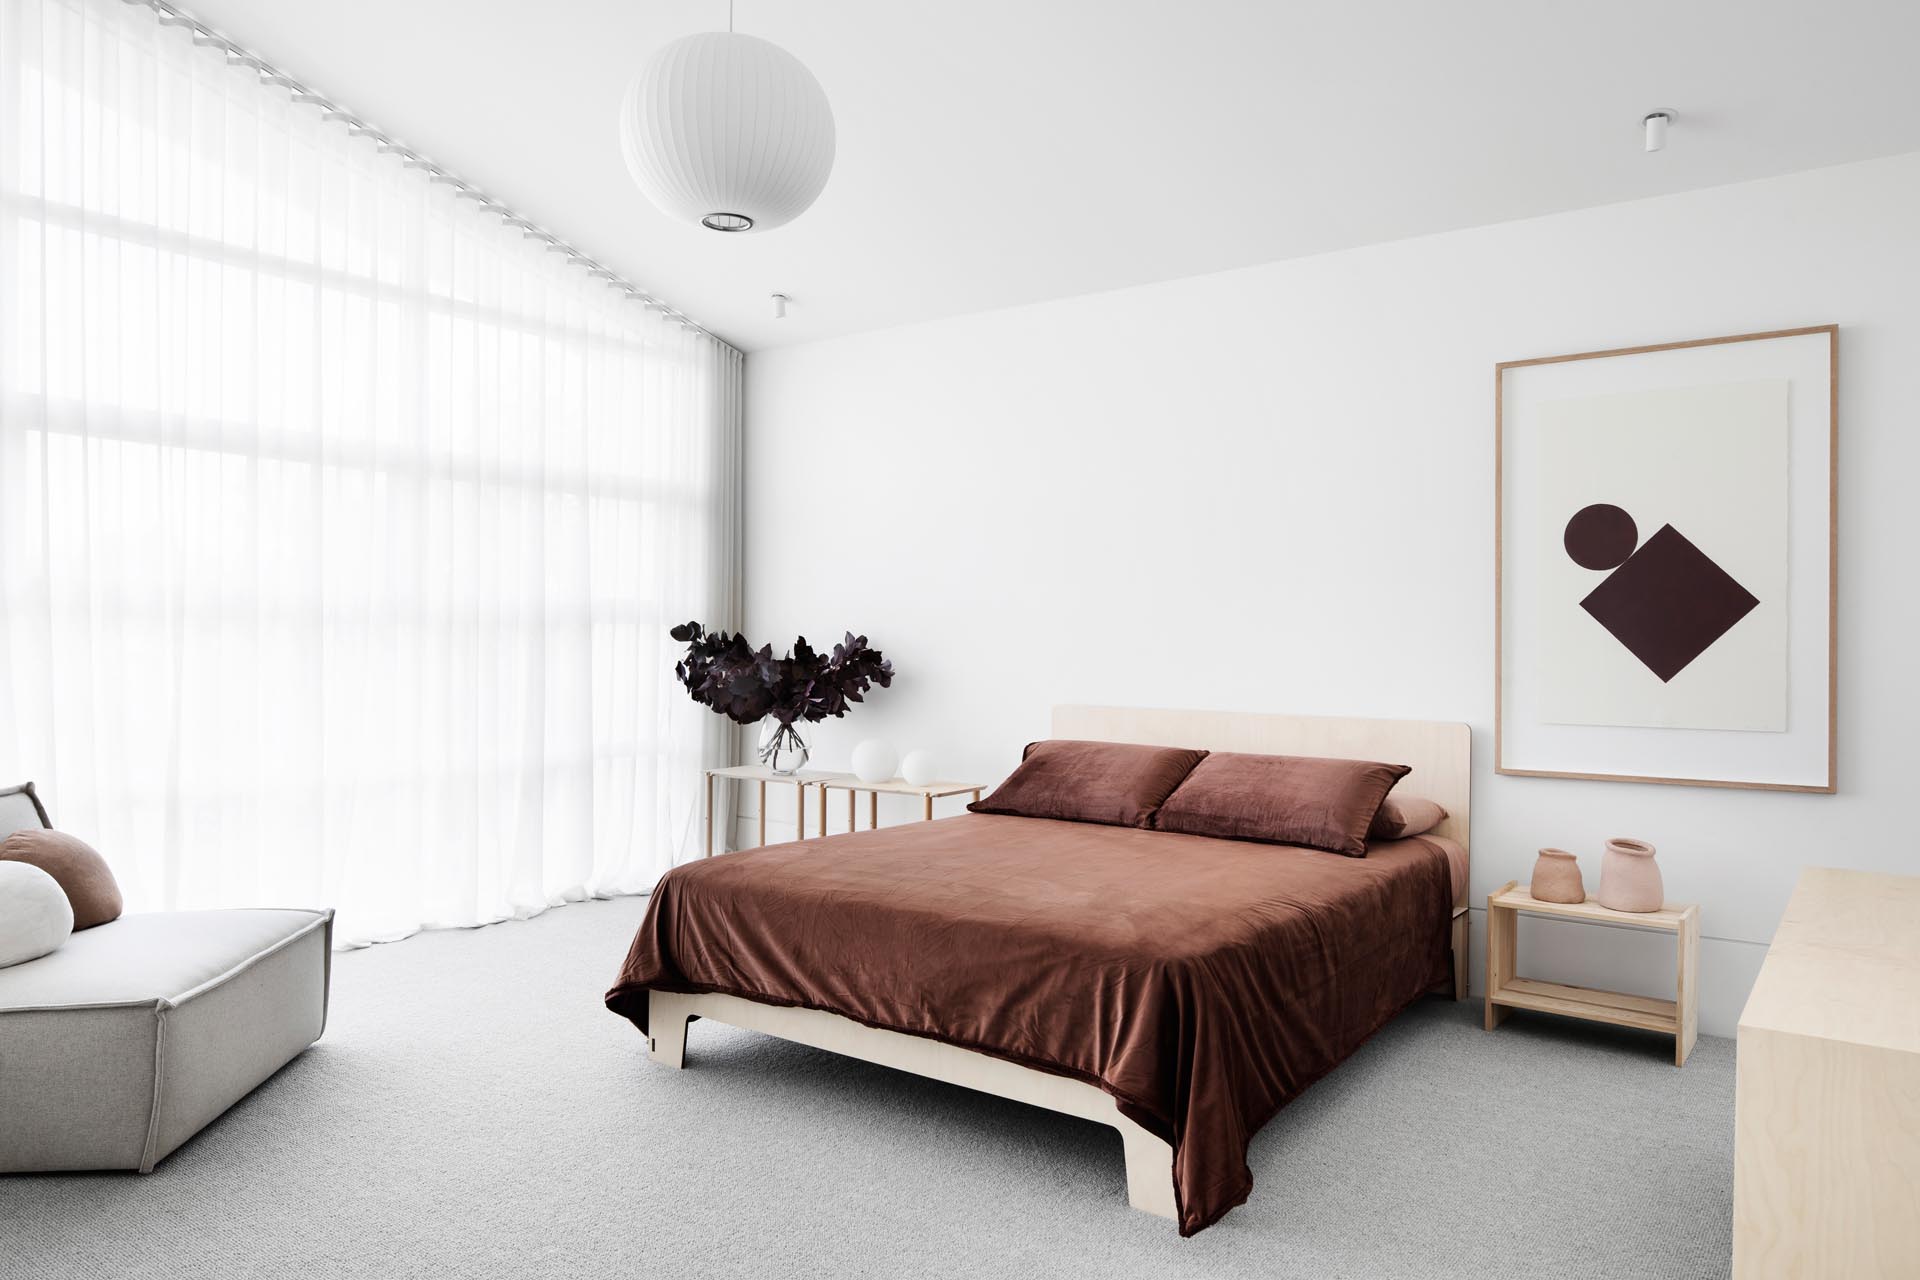 В этой главной спальне темно-коричневые постельные принадлежности контрастируют с более светлыми элементами в комнате, такими как пол, прикроватные тумбочки и стул с обивкой.